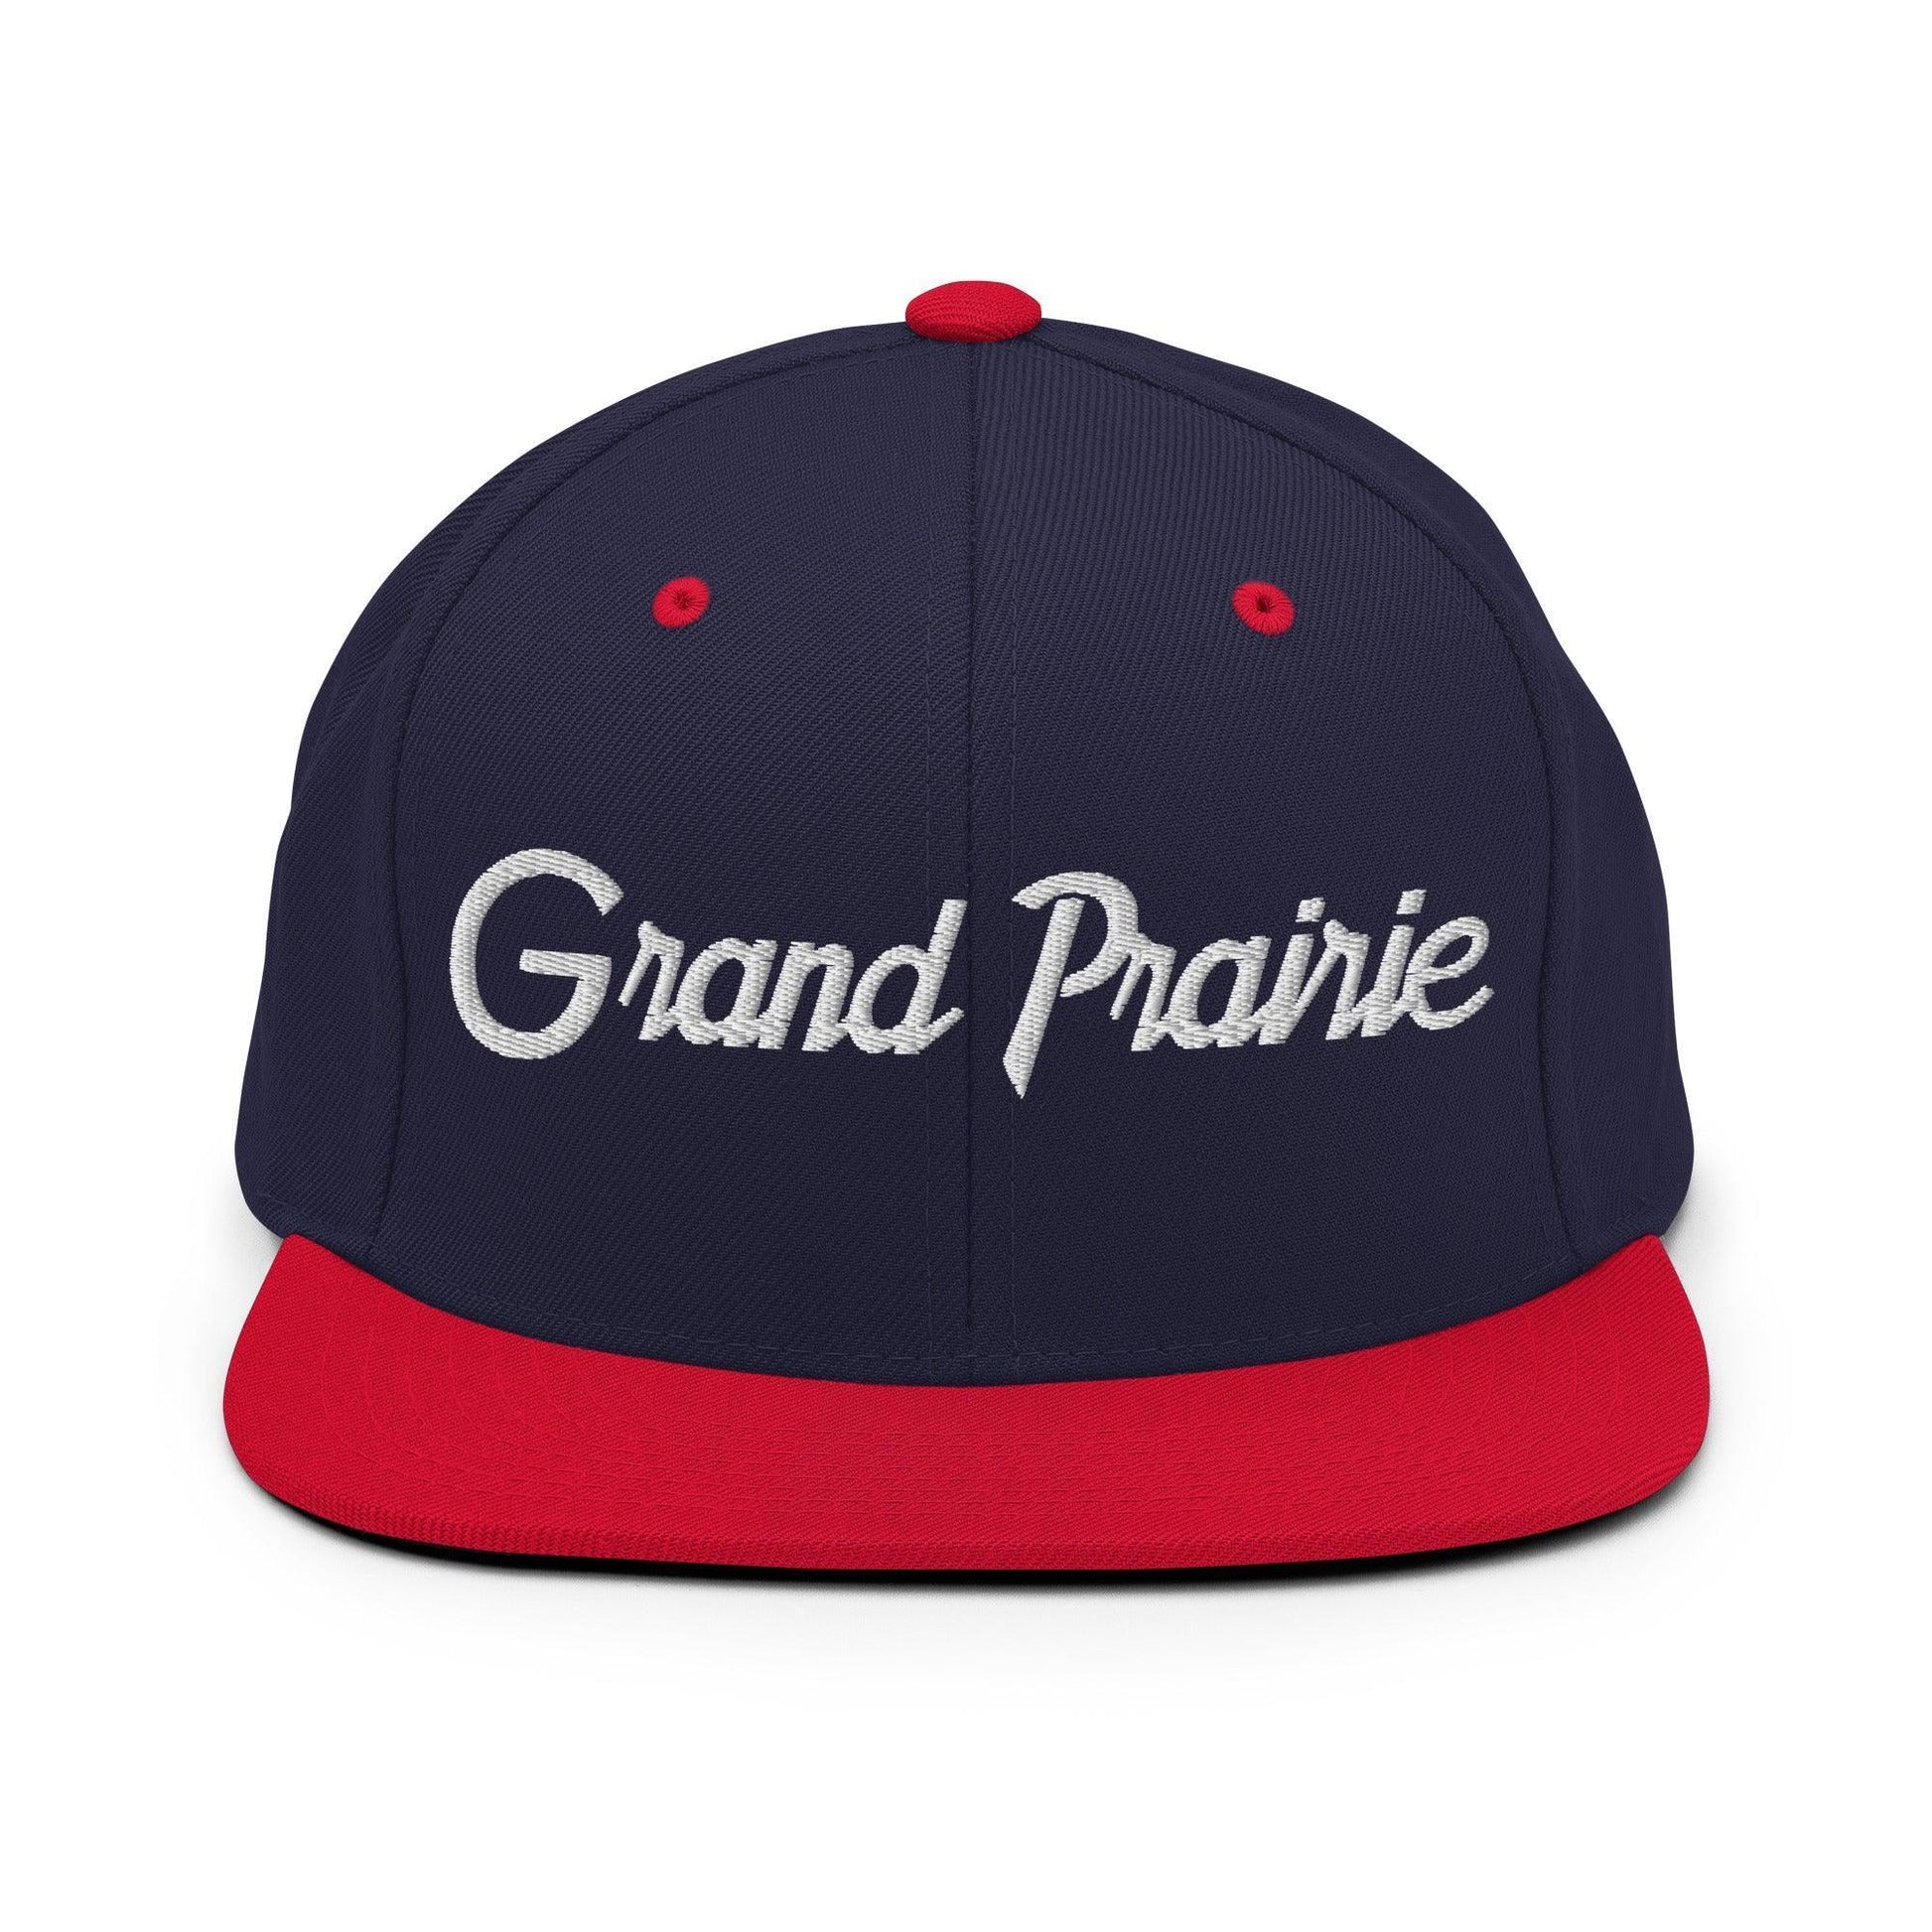 Grand Prairie Script Snapback Hat Navy/ Red